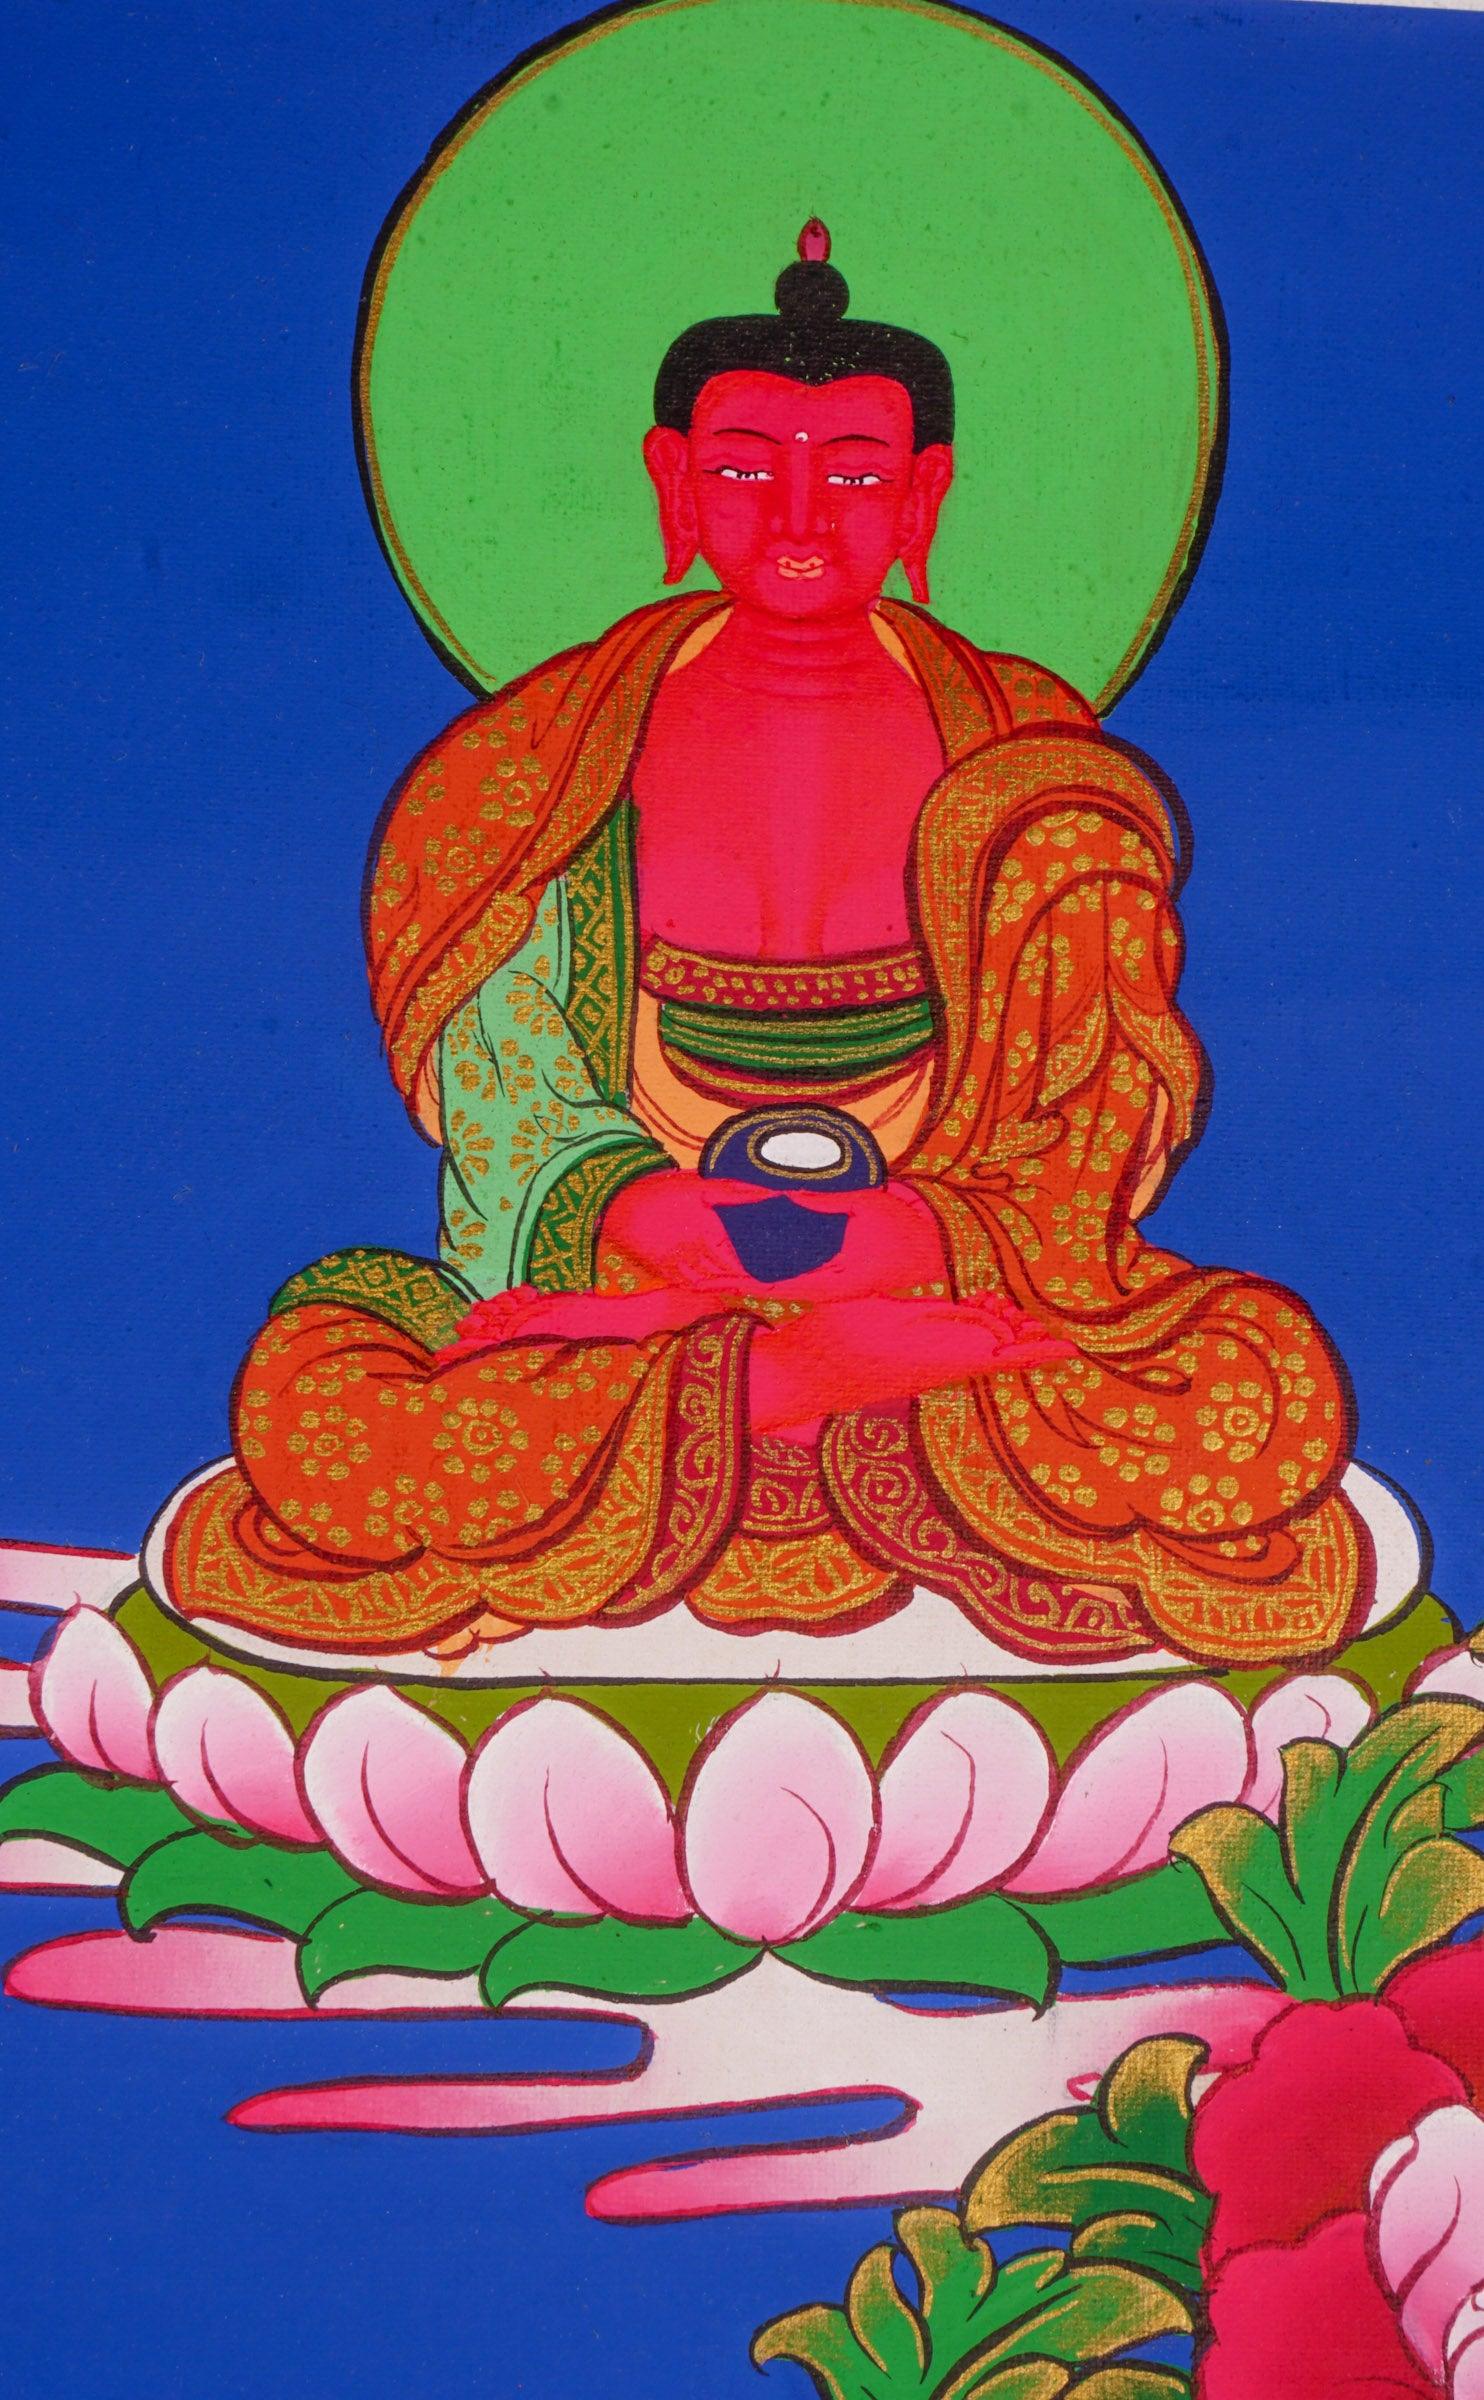 Japanese style thangka painting on canvas of Manjushri